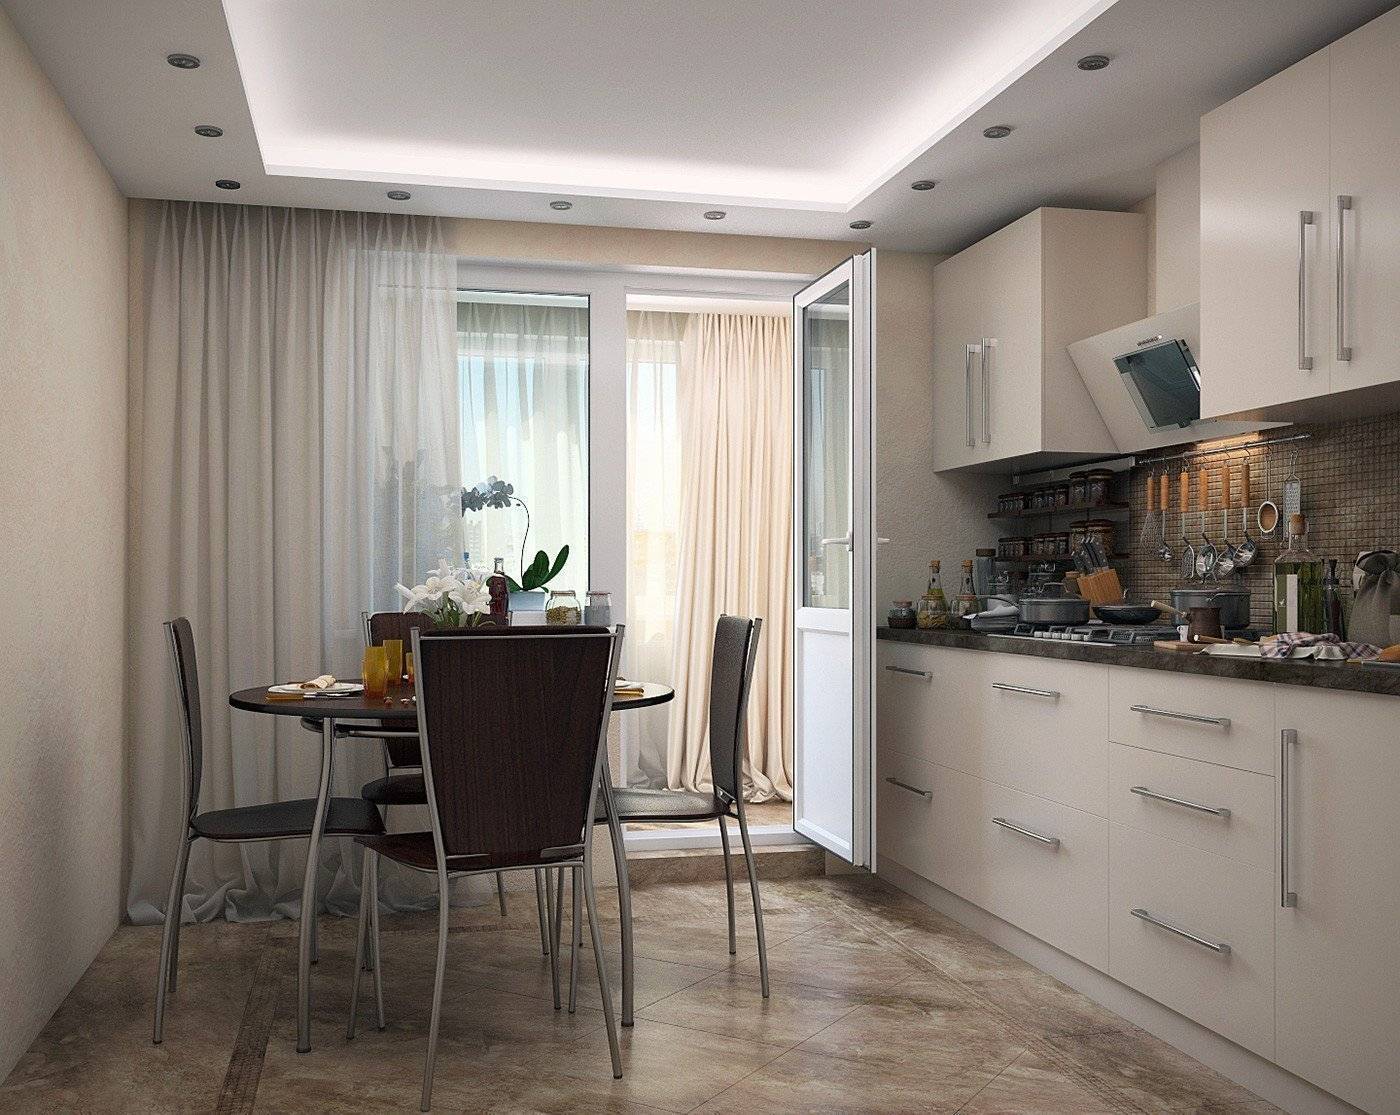 Кухня 13 кв. м: идеи дизайна и интерьера, фото, с диваном, эркером или балконом, примеры планировки